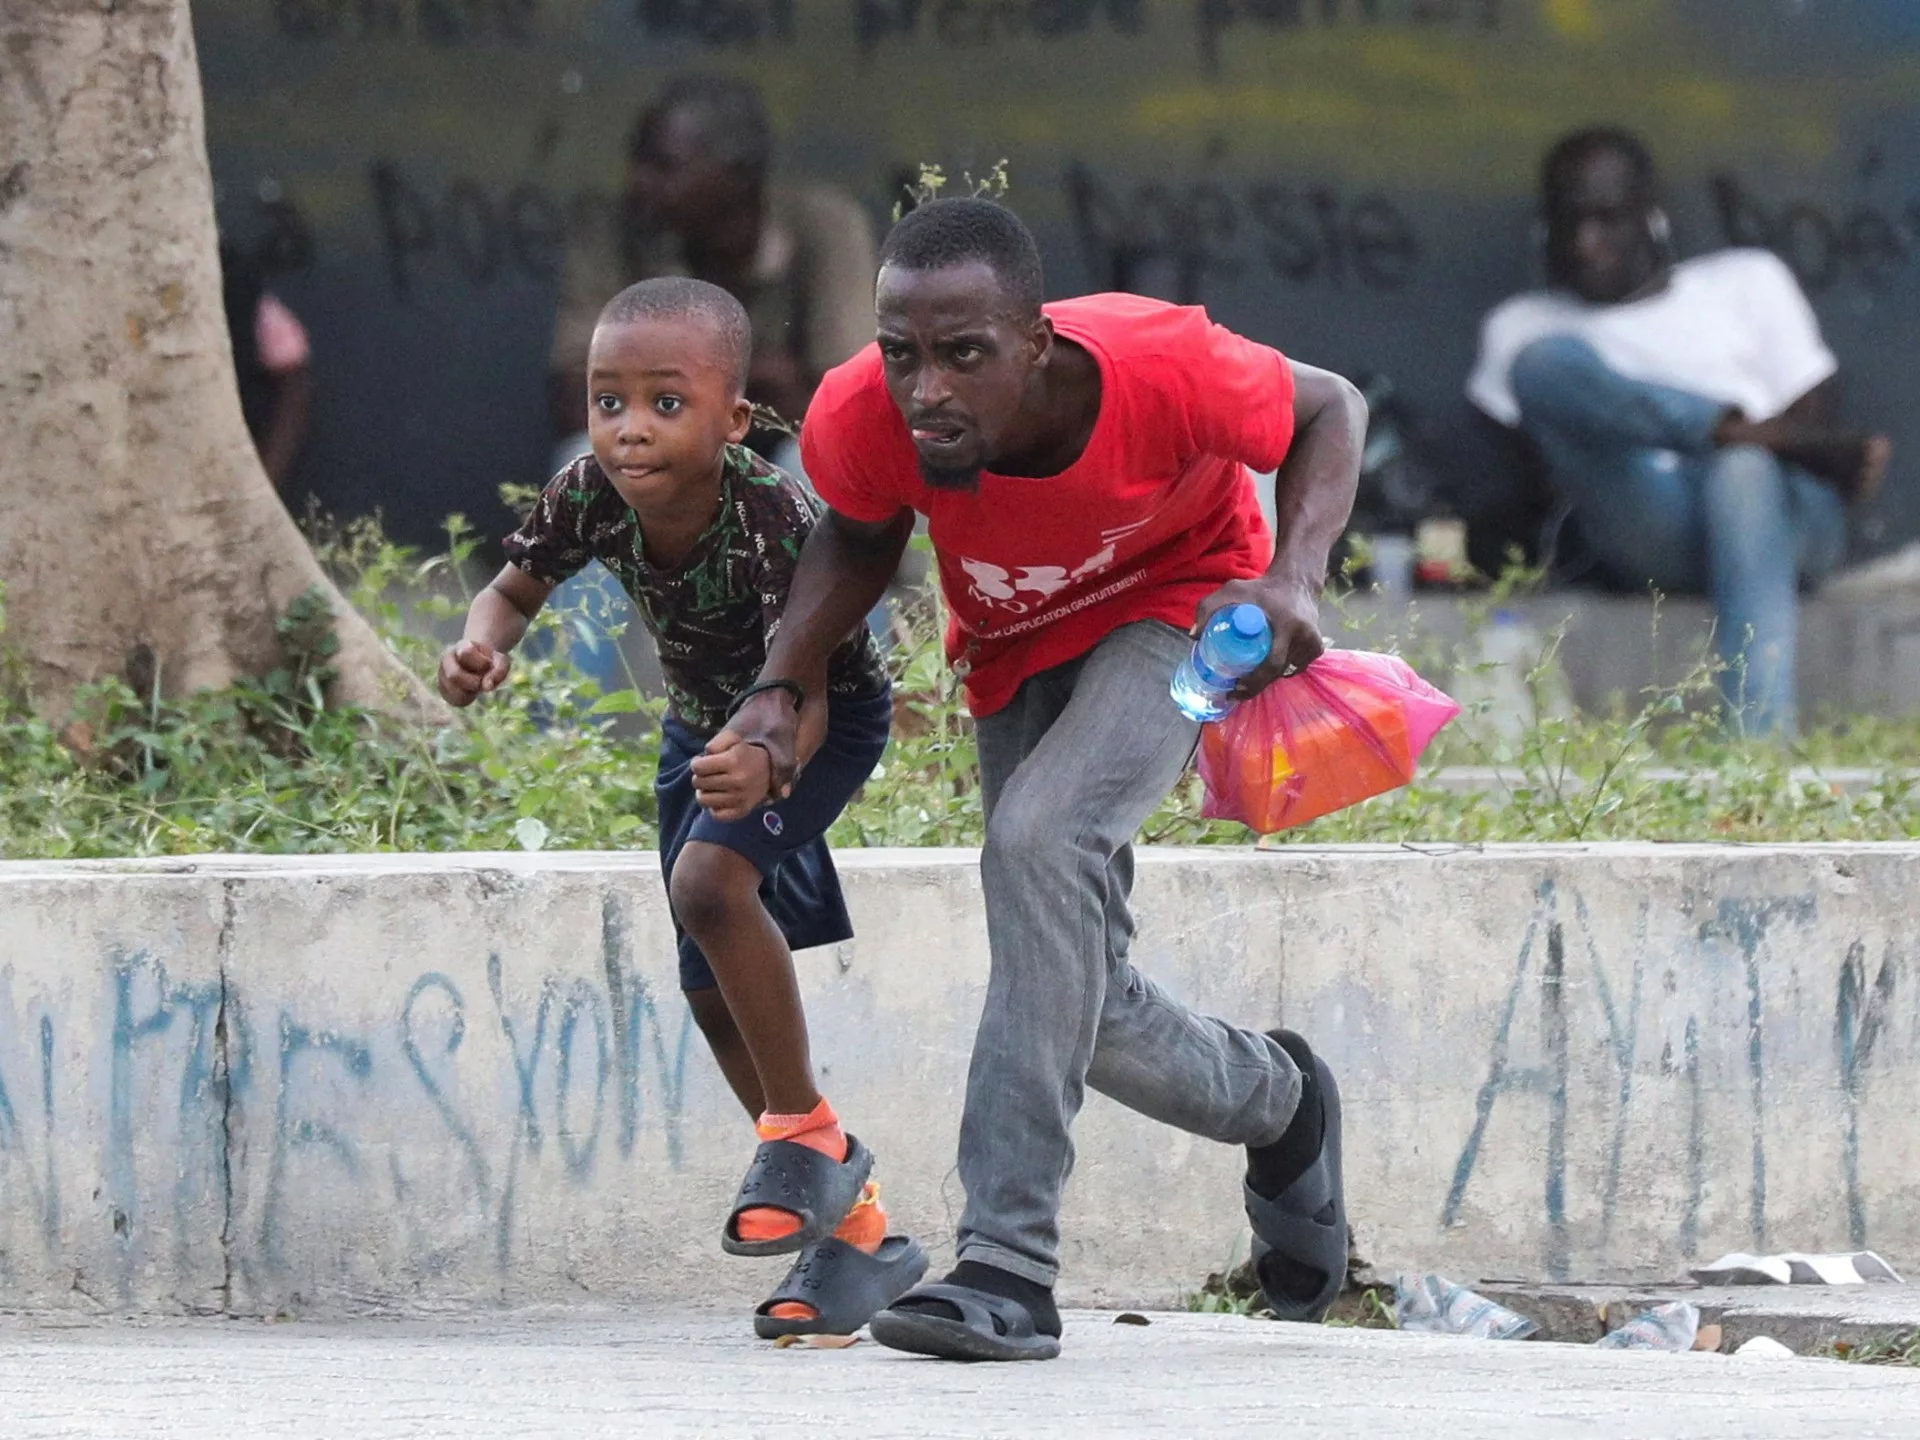 Haití establece un consejo para elegir nuevos líderes a medida que aumenta la violencia de las pandillas |  Política Noticias